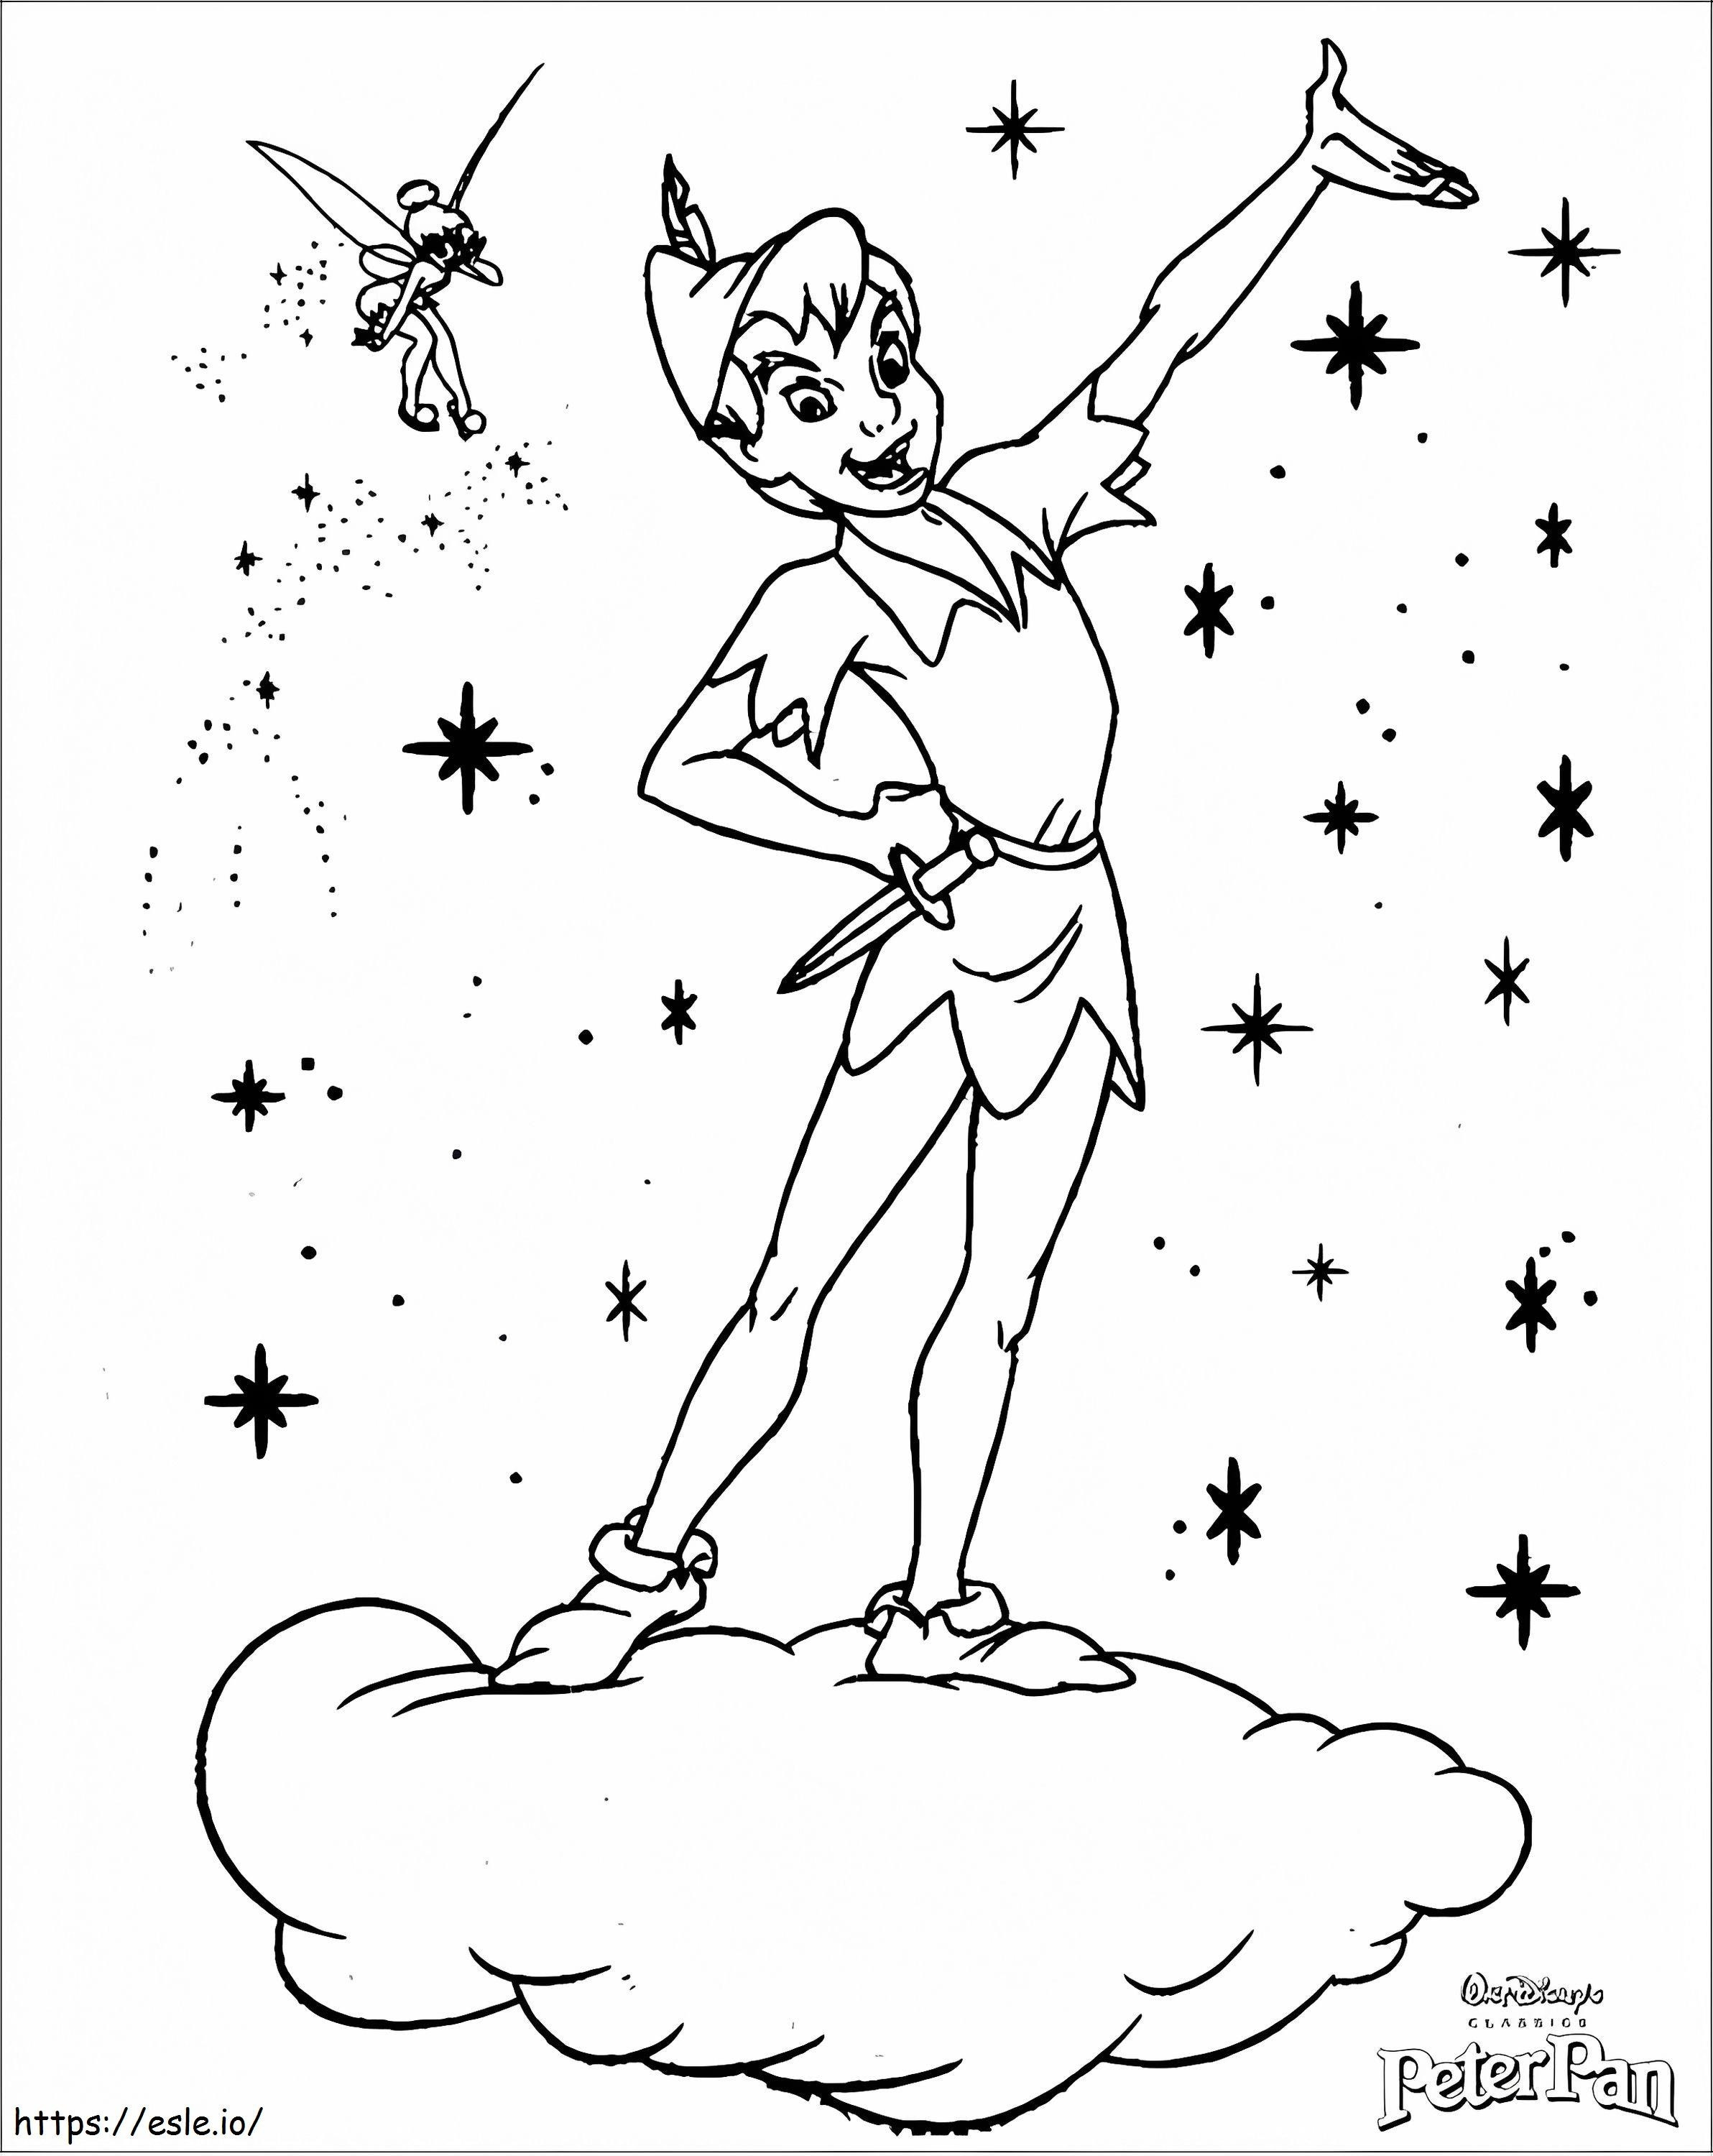 Coloriage Peter Pan et la fée Clochette avec Star à imprimer dessin